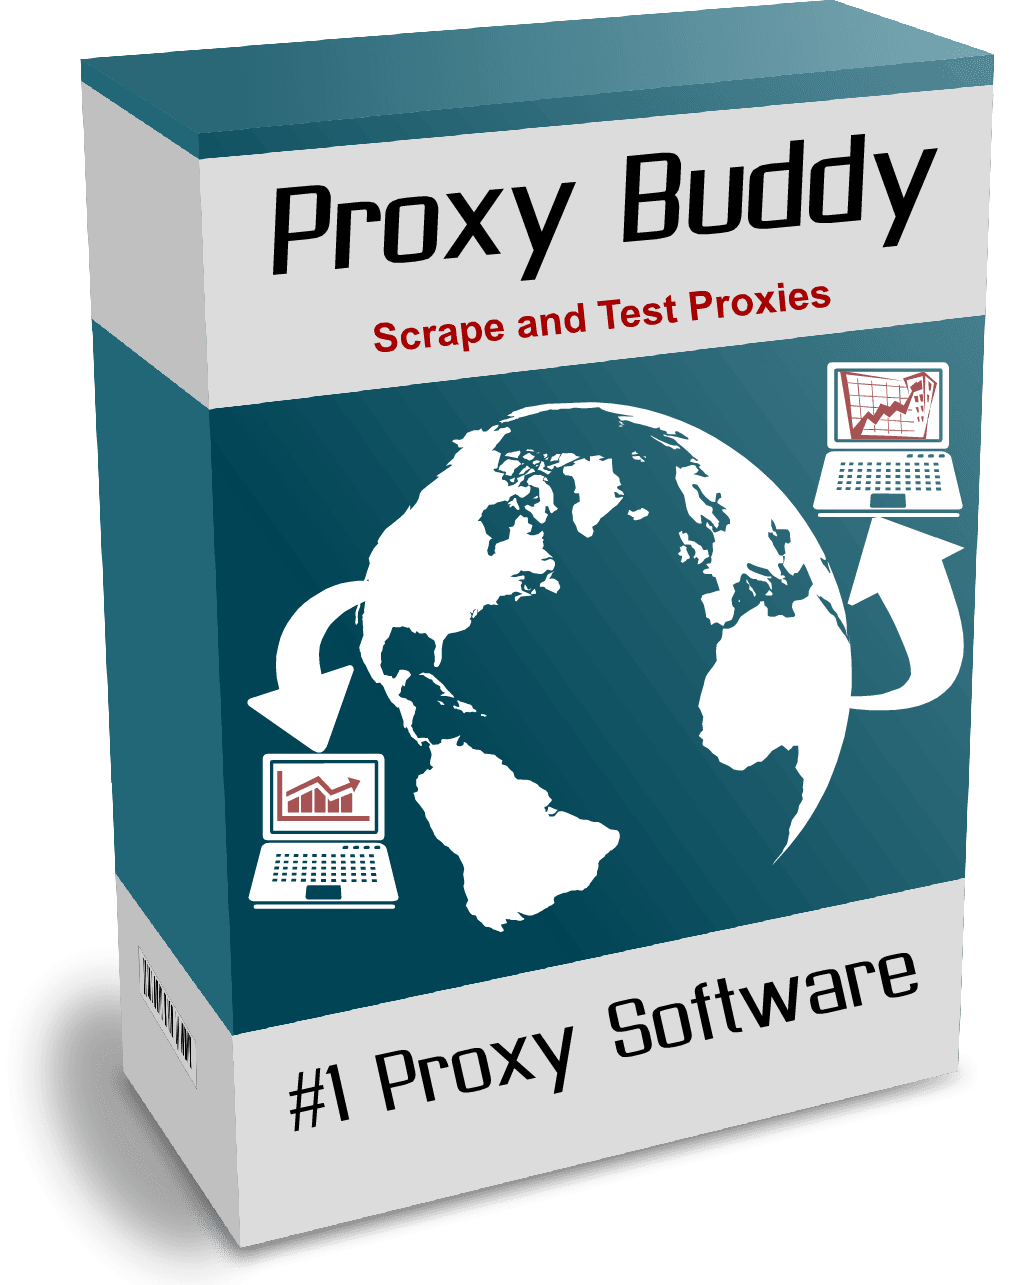 Proxy Buddy – Quick start guide